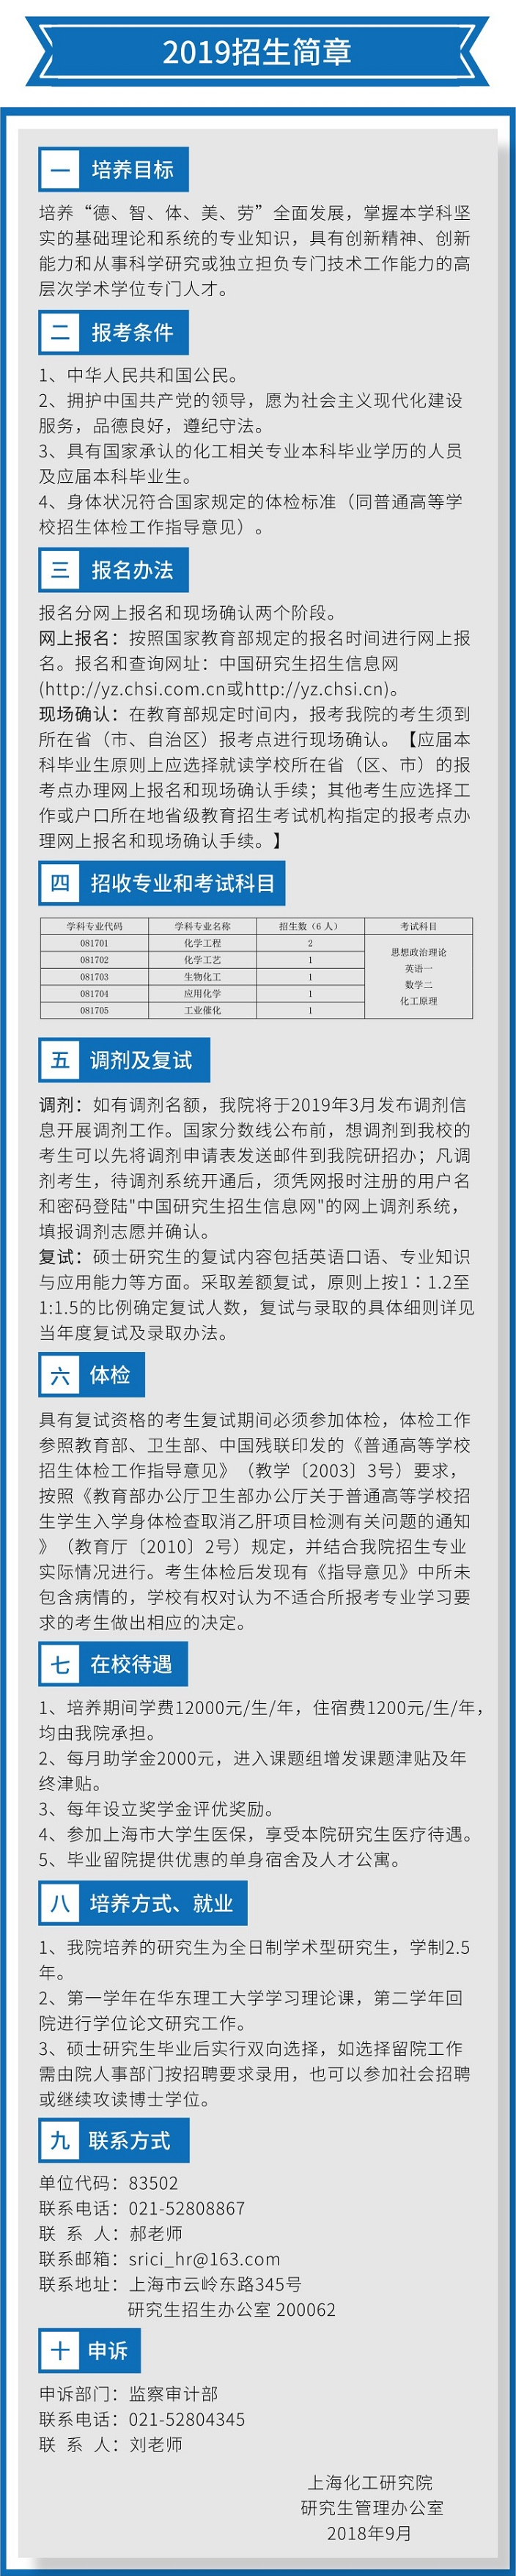 上海化工研究院2019考研招生简章